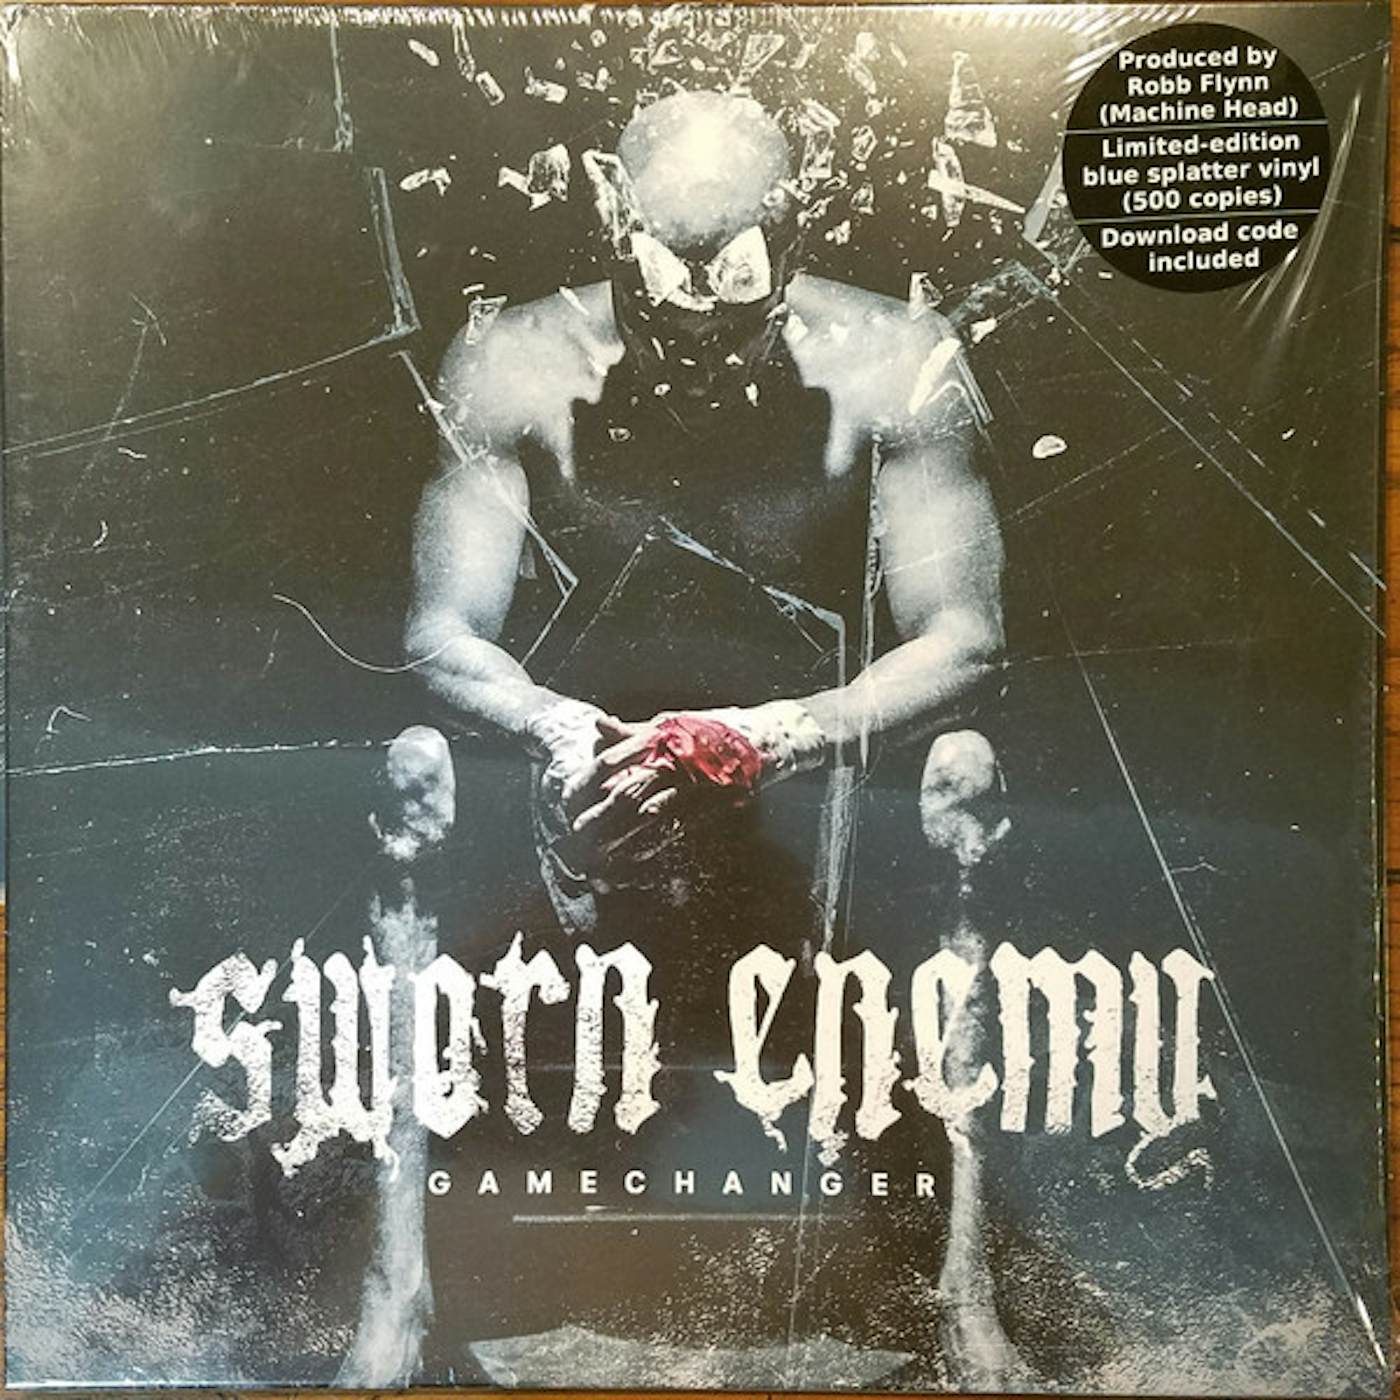 Sworn Enemy Gamechanger Vinyl Record